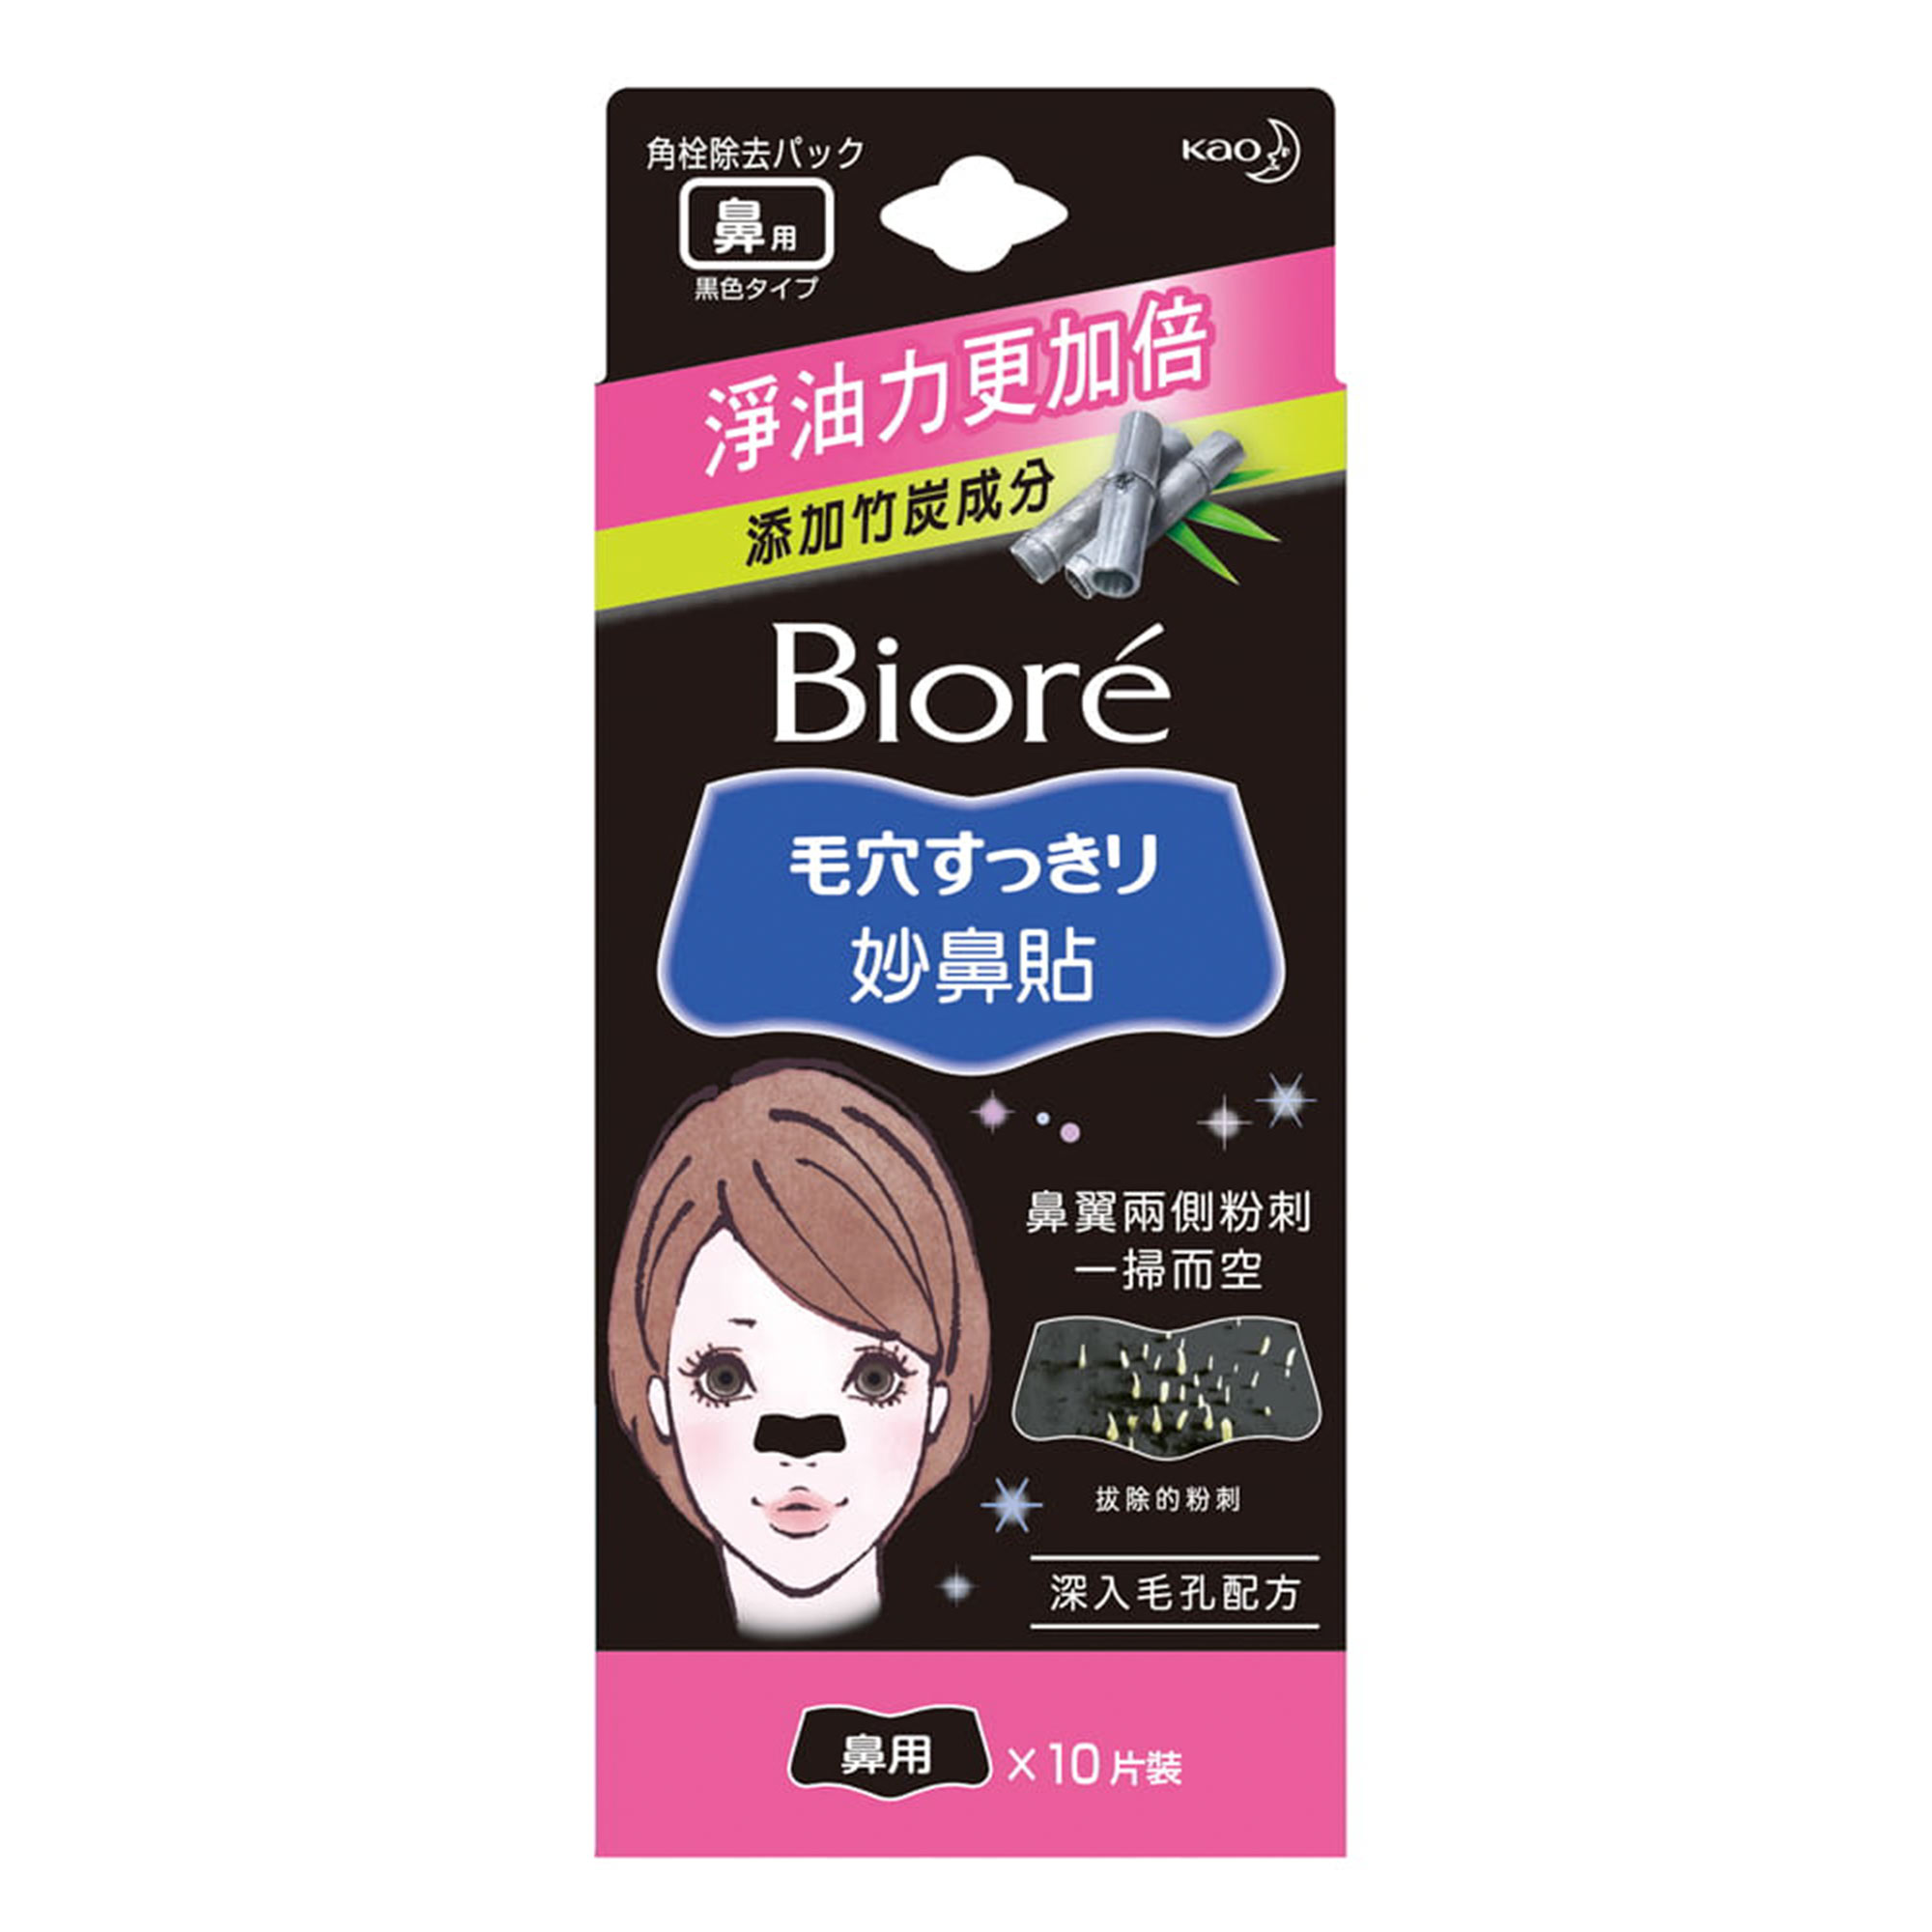 Очищающие полоски для носа Biore  с бамбуковым углем 10 шт полоски для квиллинга 120 полосок плотность120гр